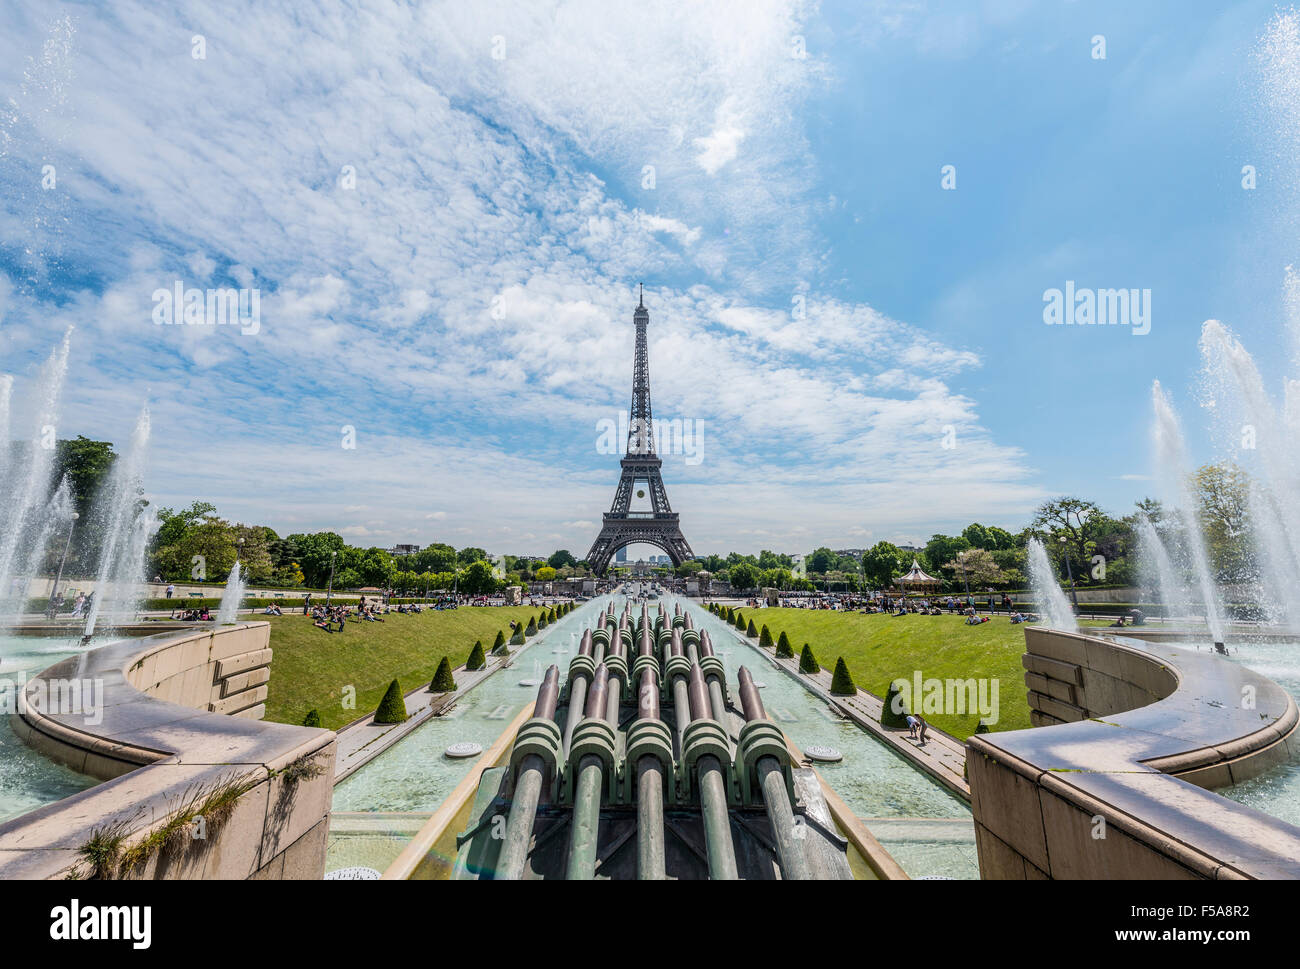 La Tour Eiffel, tour Eiffel, Jardins du Trocadéro, Paris, France Banque D'Images